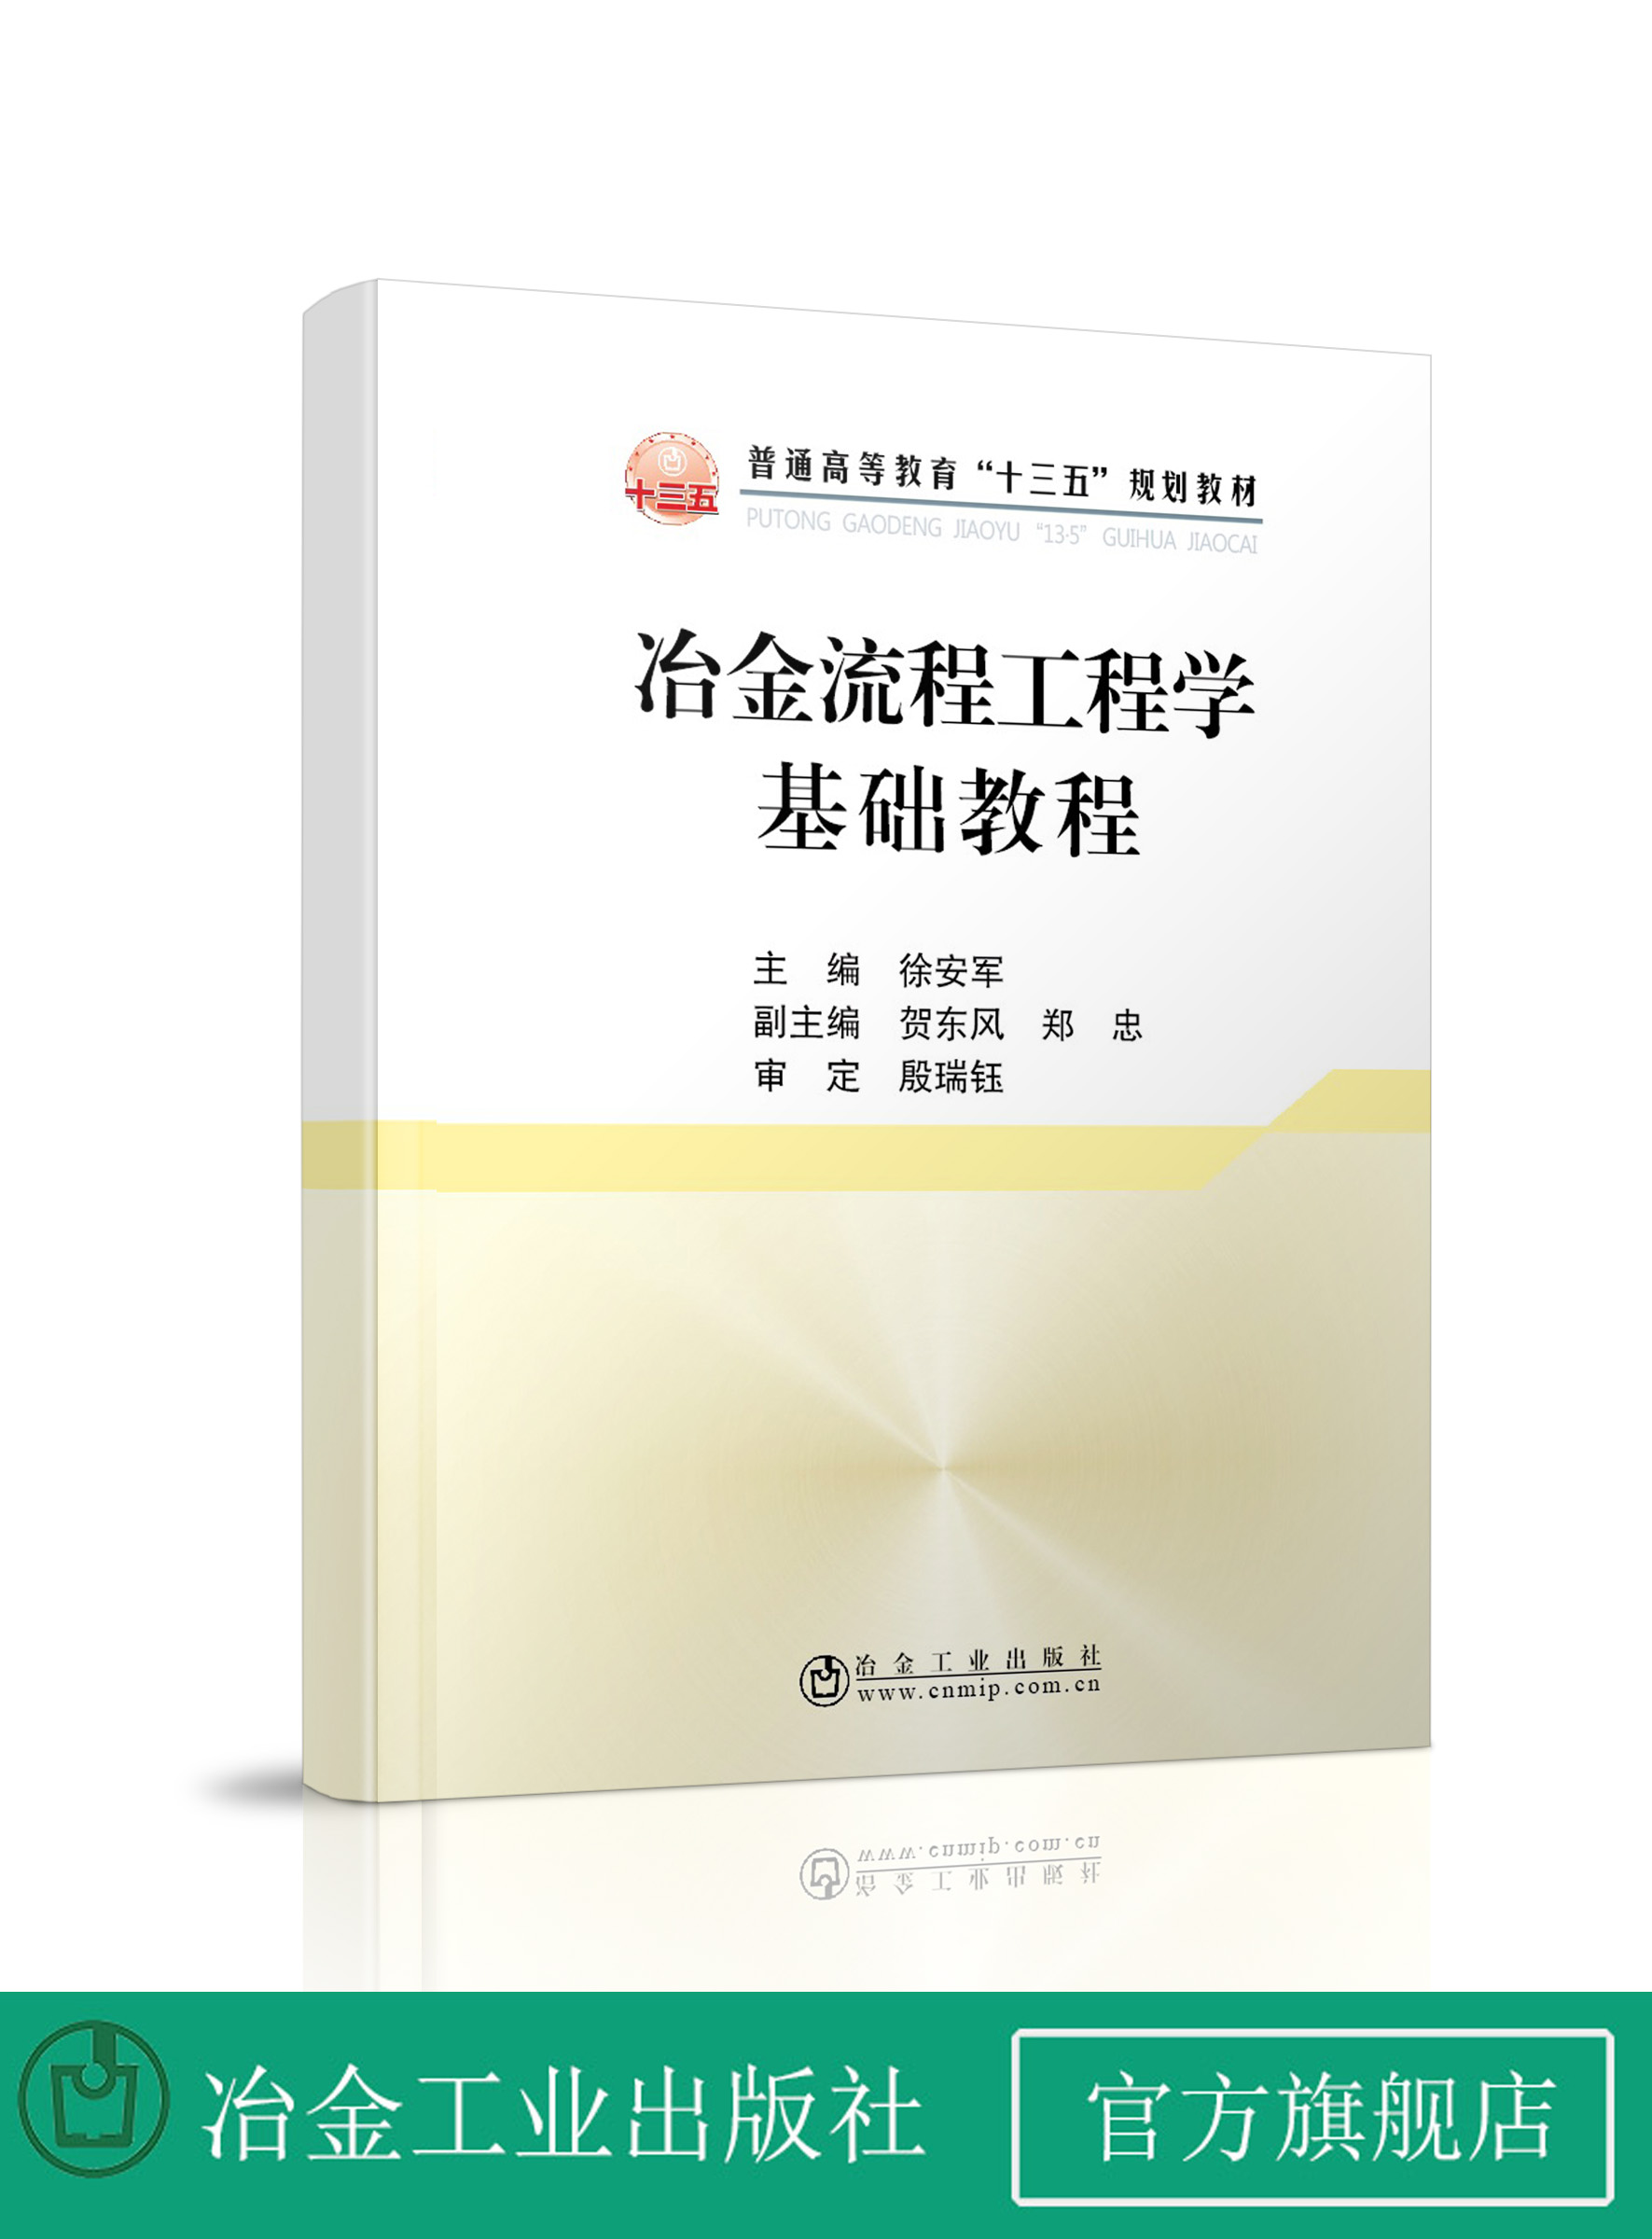 冶金流程工程学基础教程  徐安军  冶金工业出版社   正品书籍